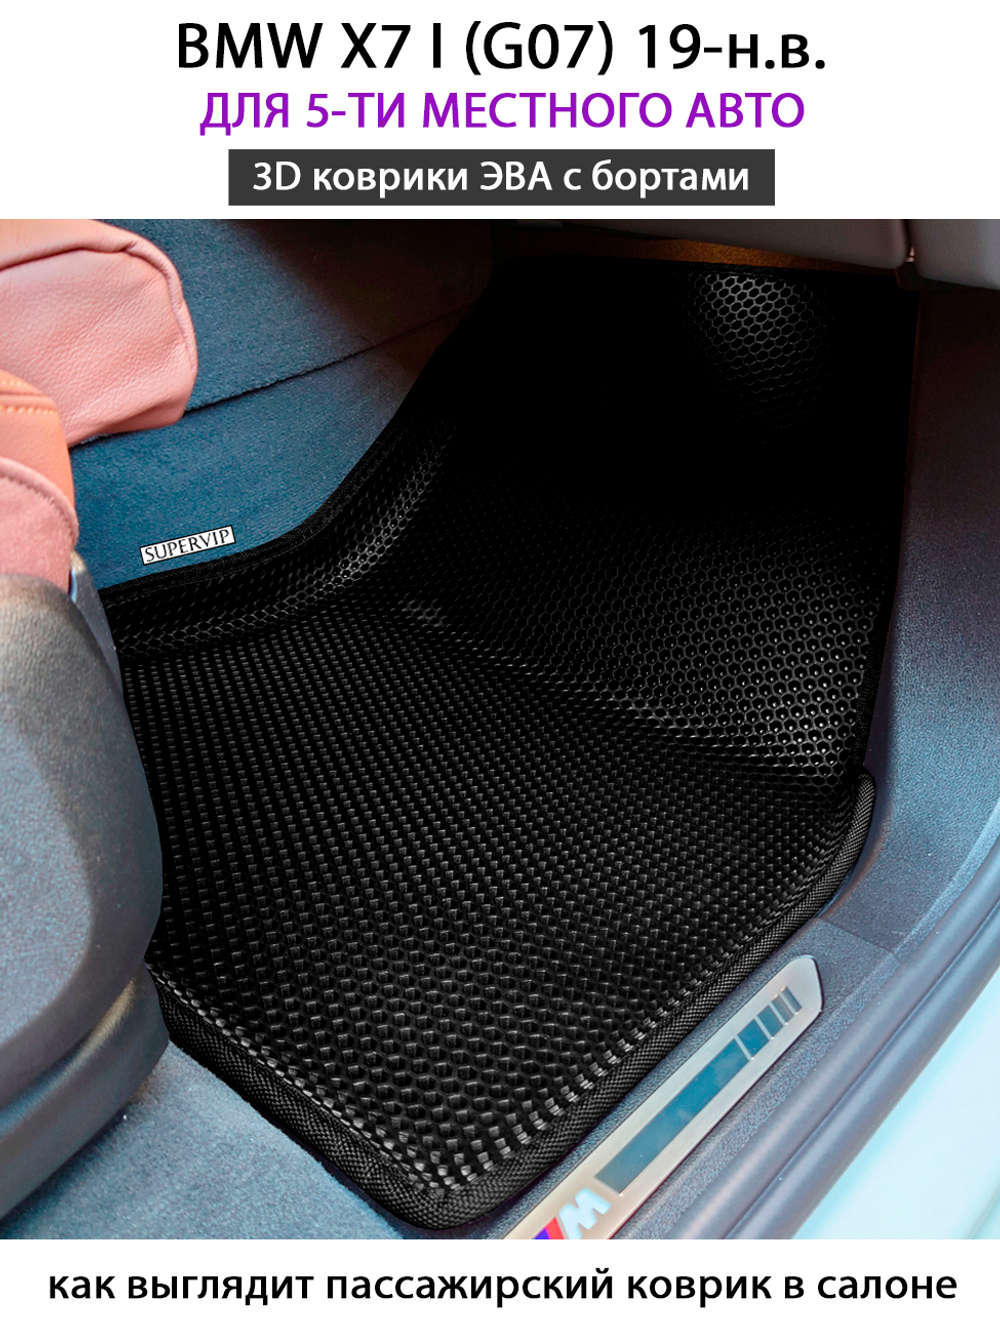 комплект eva ковриков в салоне авто для bmw x7 I g07 от supervip